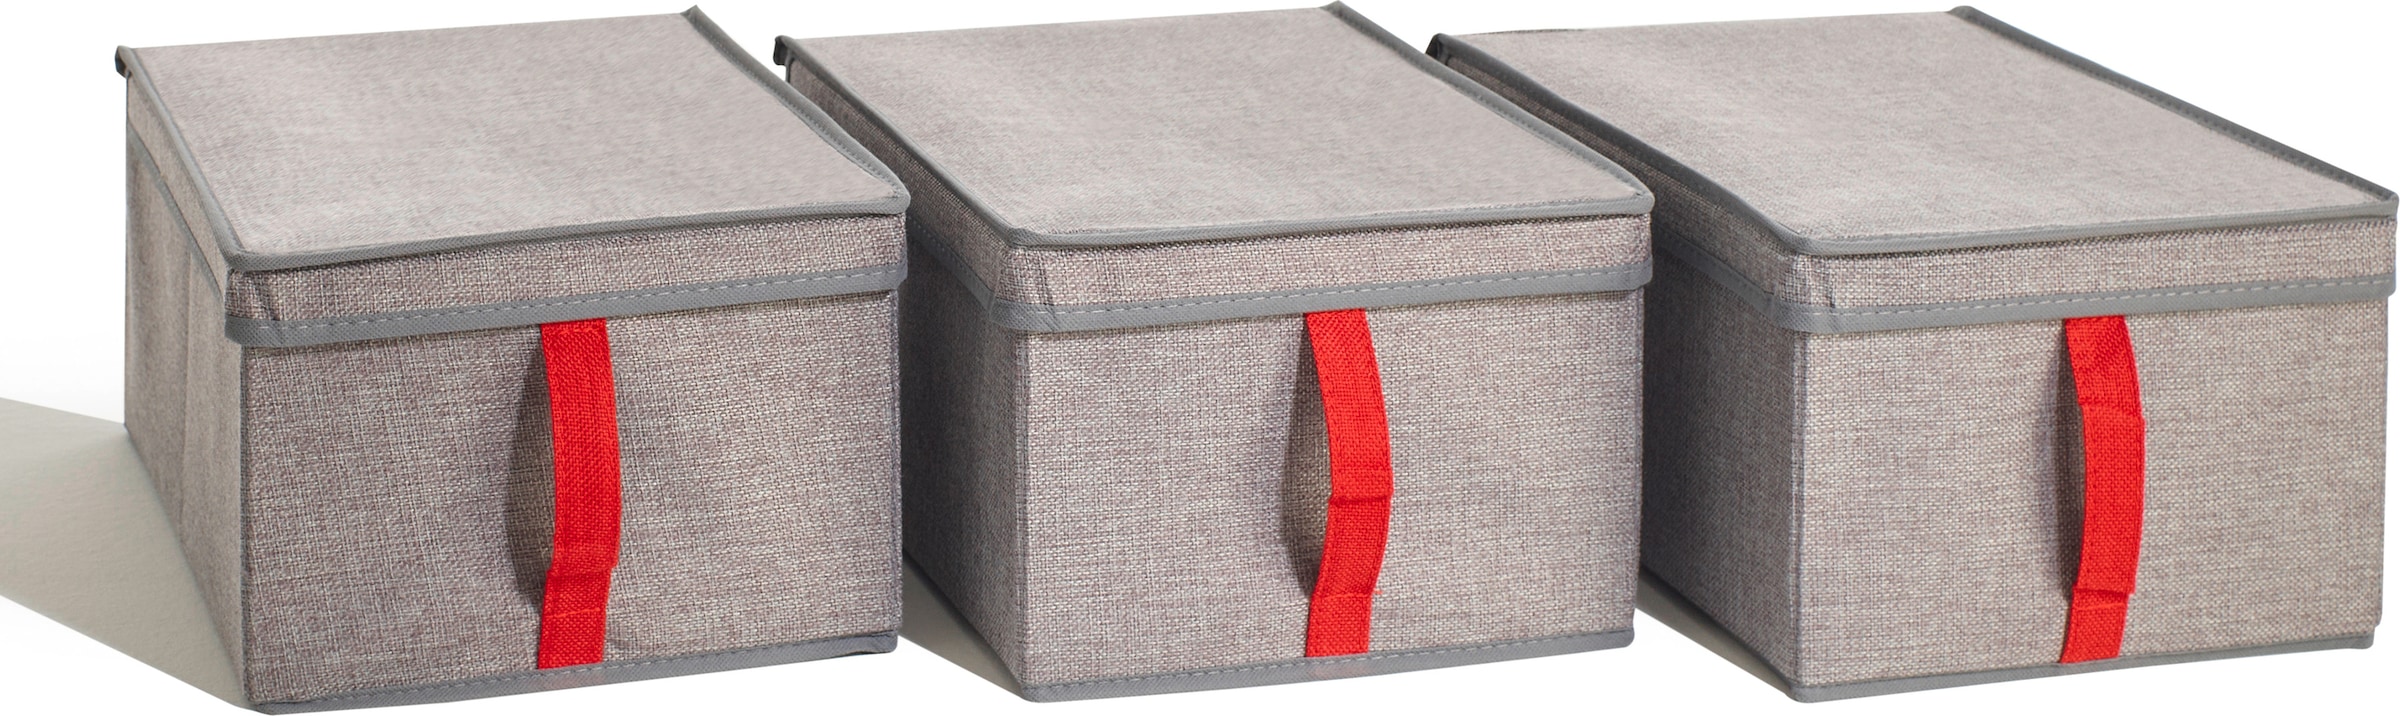 Aufbewahrungsbox »Zubehör«, 3er Set Stoffboxen mit Deckel und roter Lasche